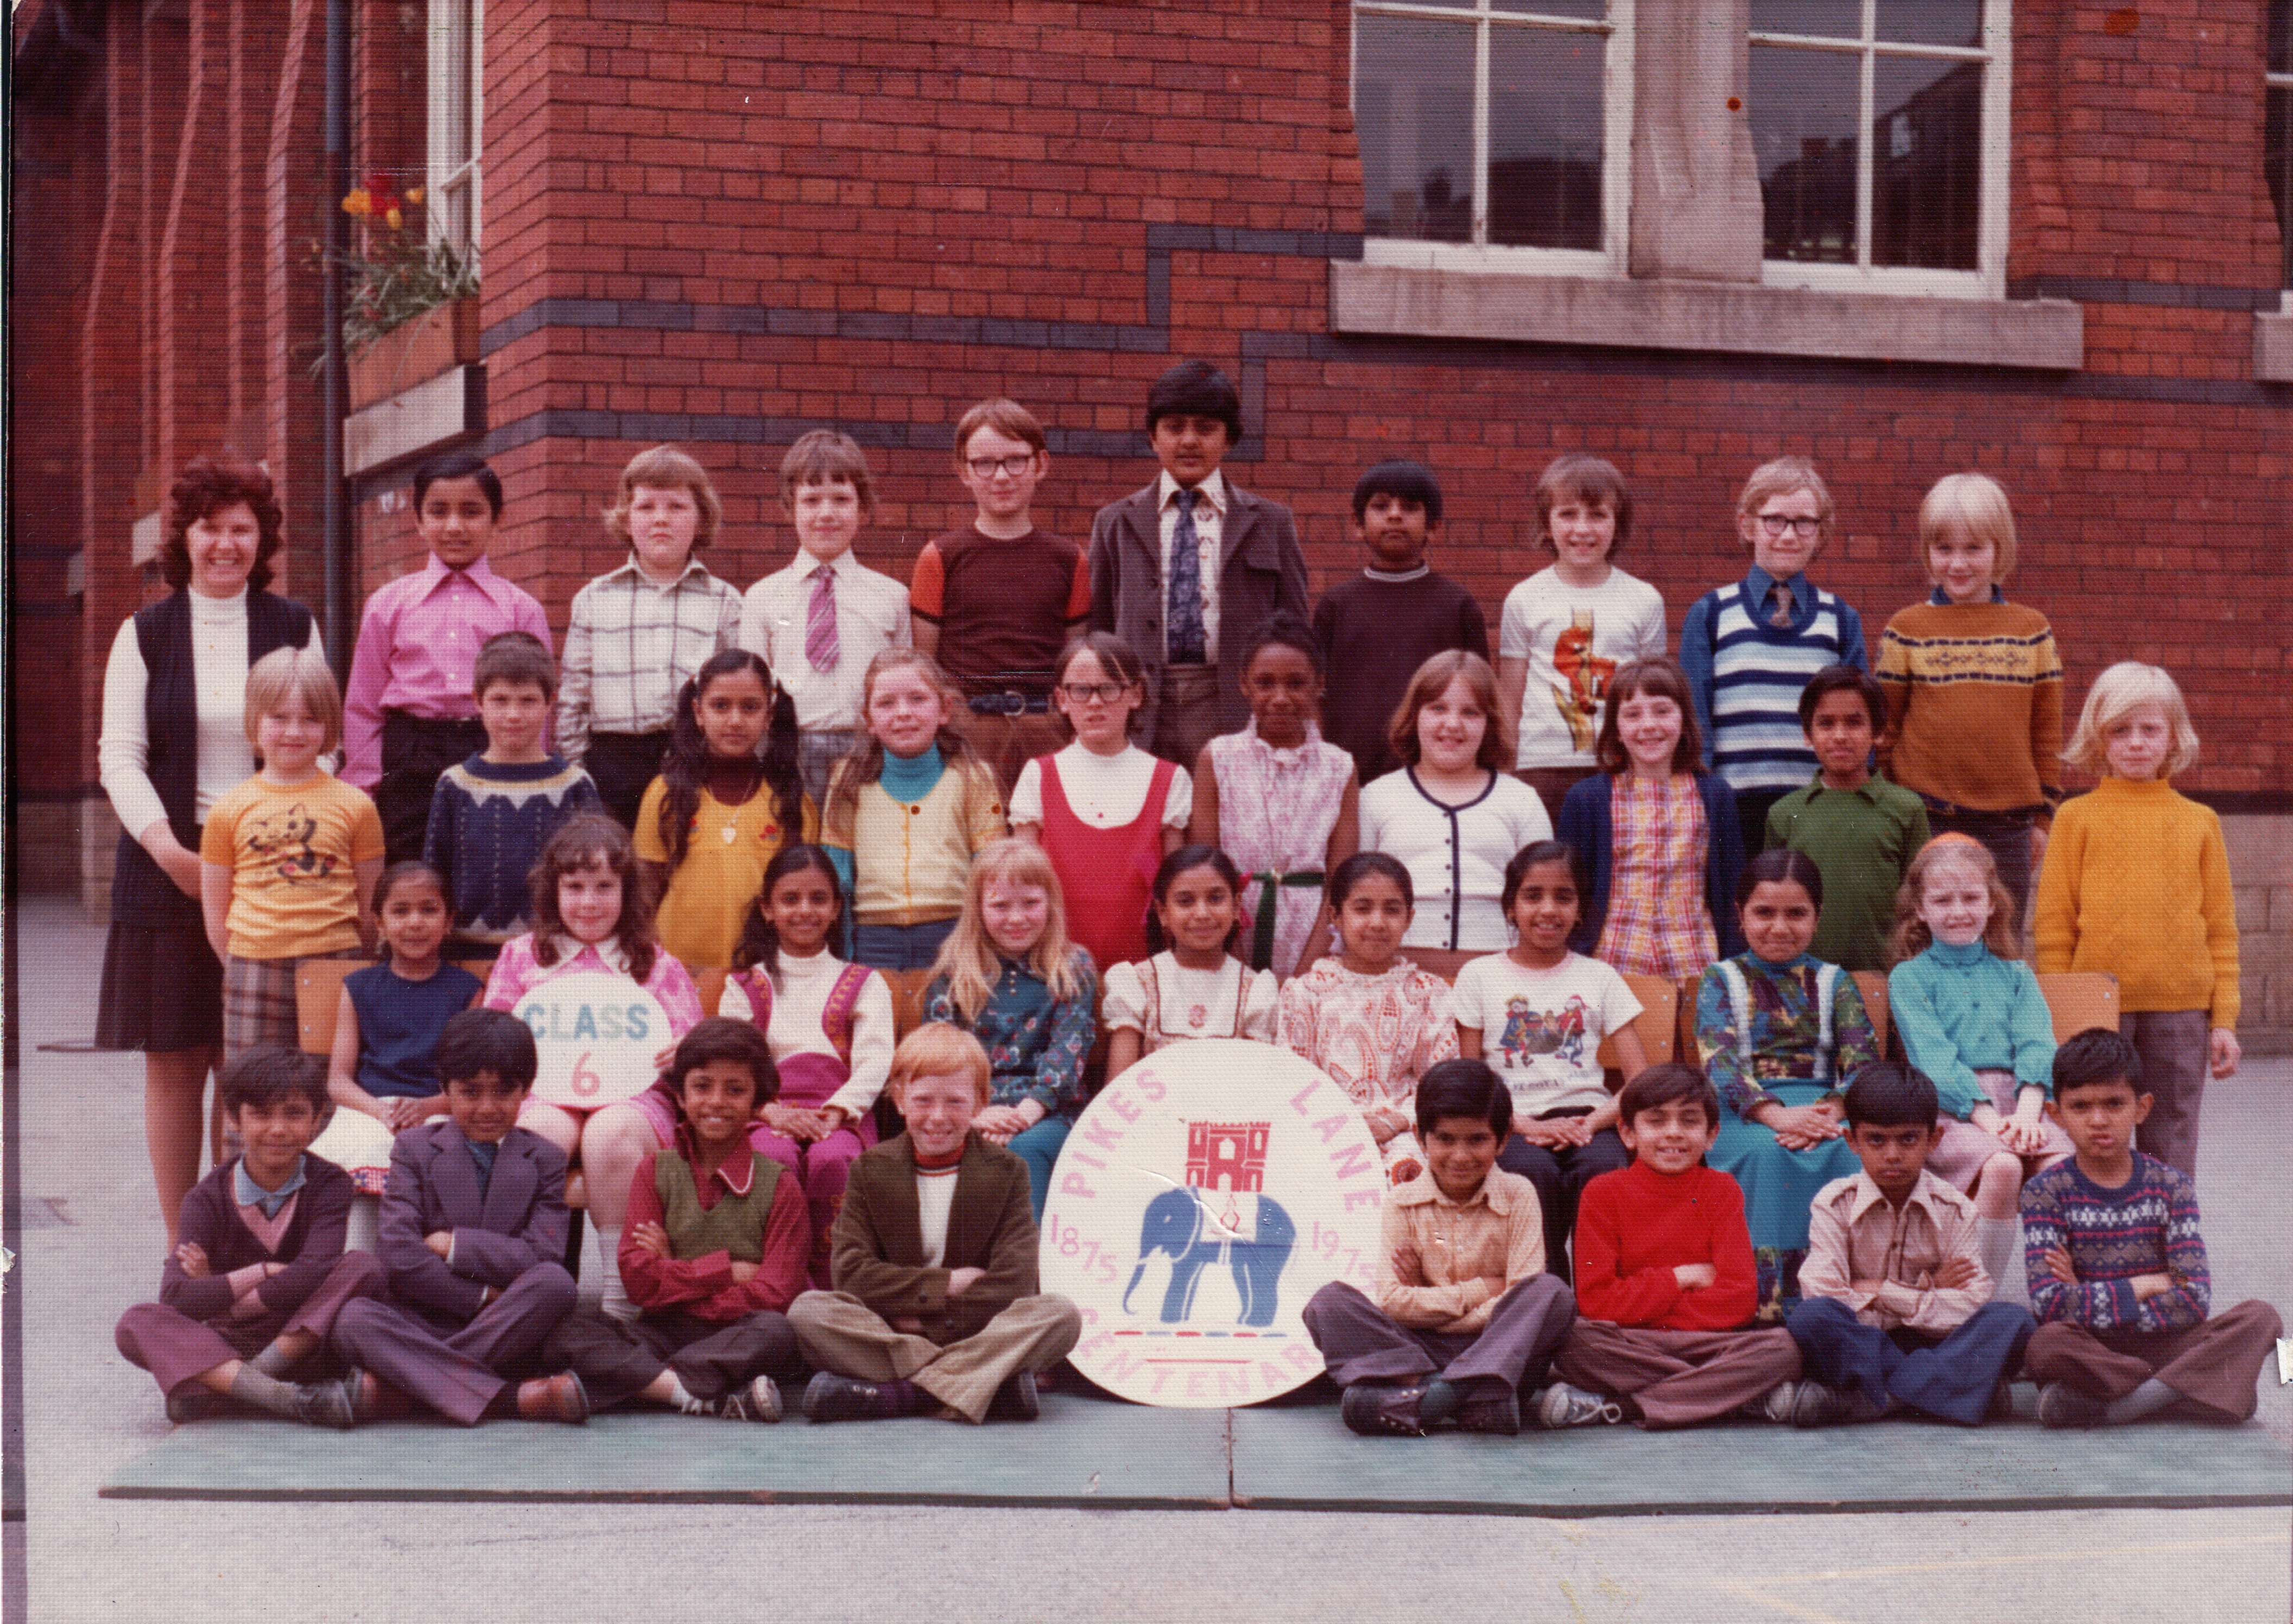 Pikes Lane Primary School, 1975